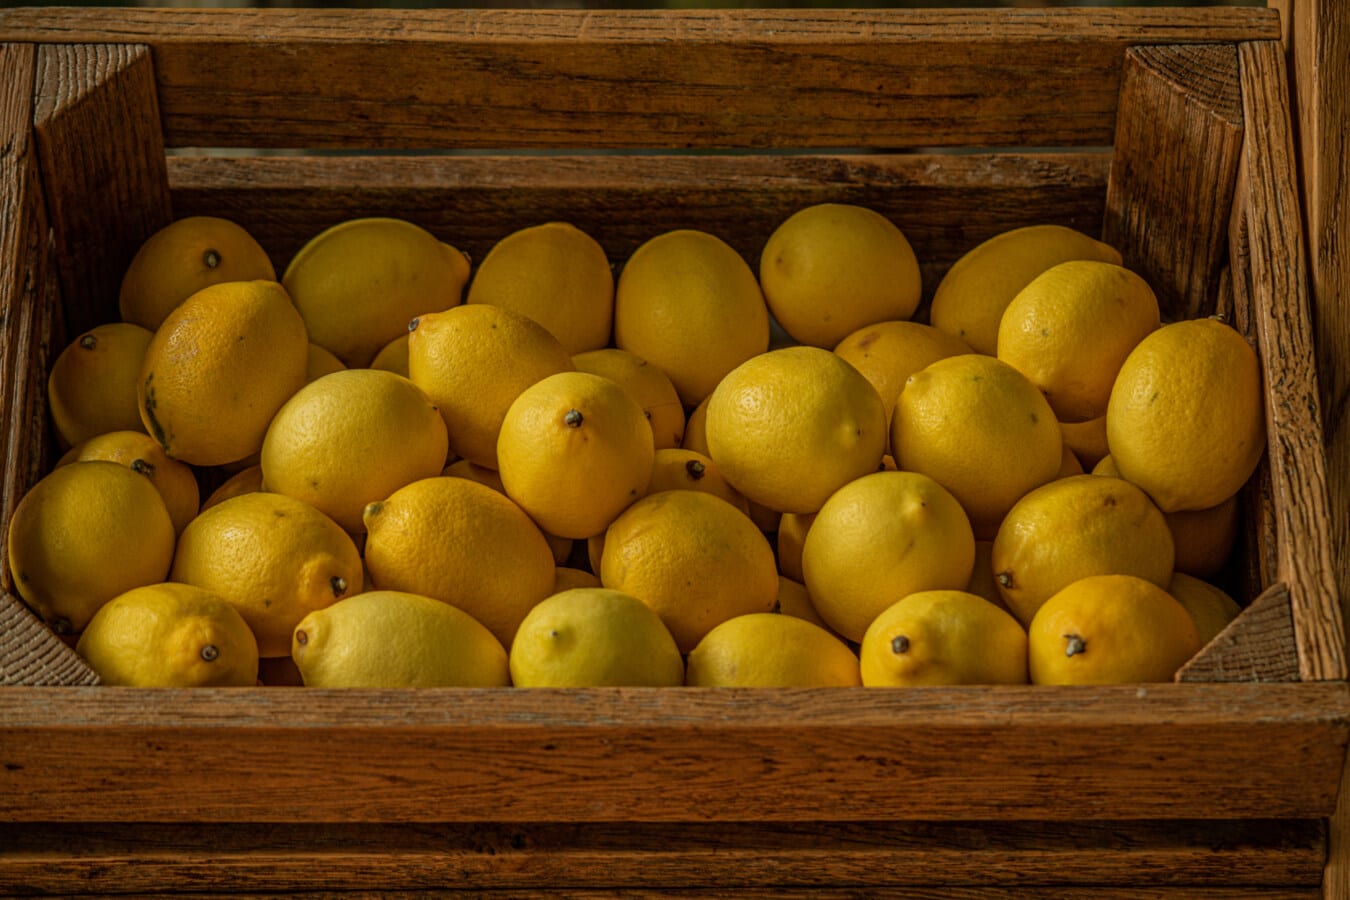 레몬, 감귤 류, 익은 과일, 나무, 상자, 유기, 농업, 음식, 생산, 과일